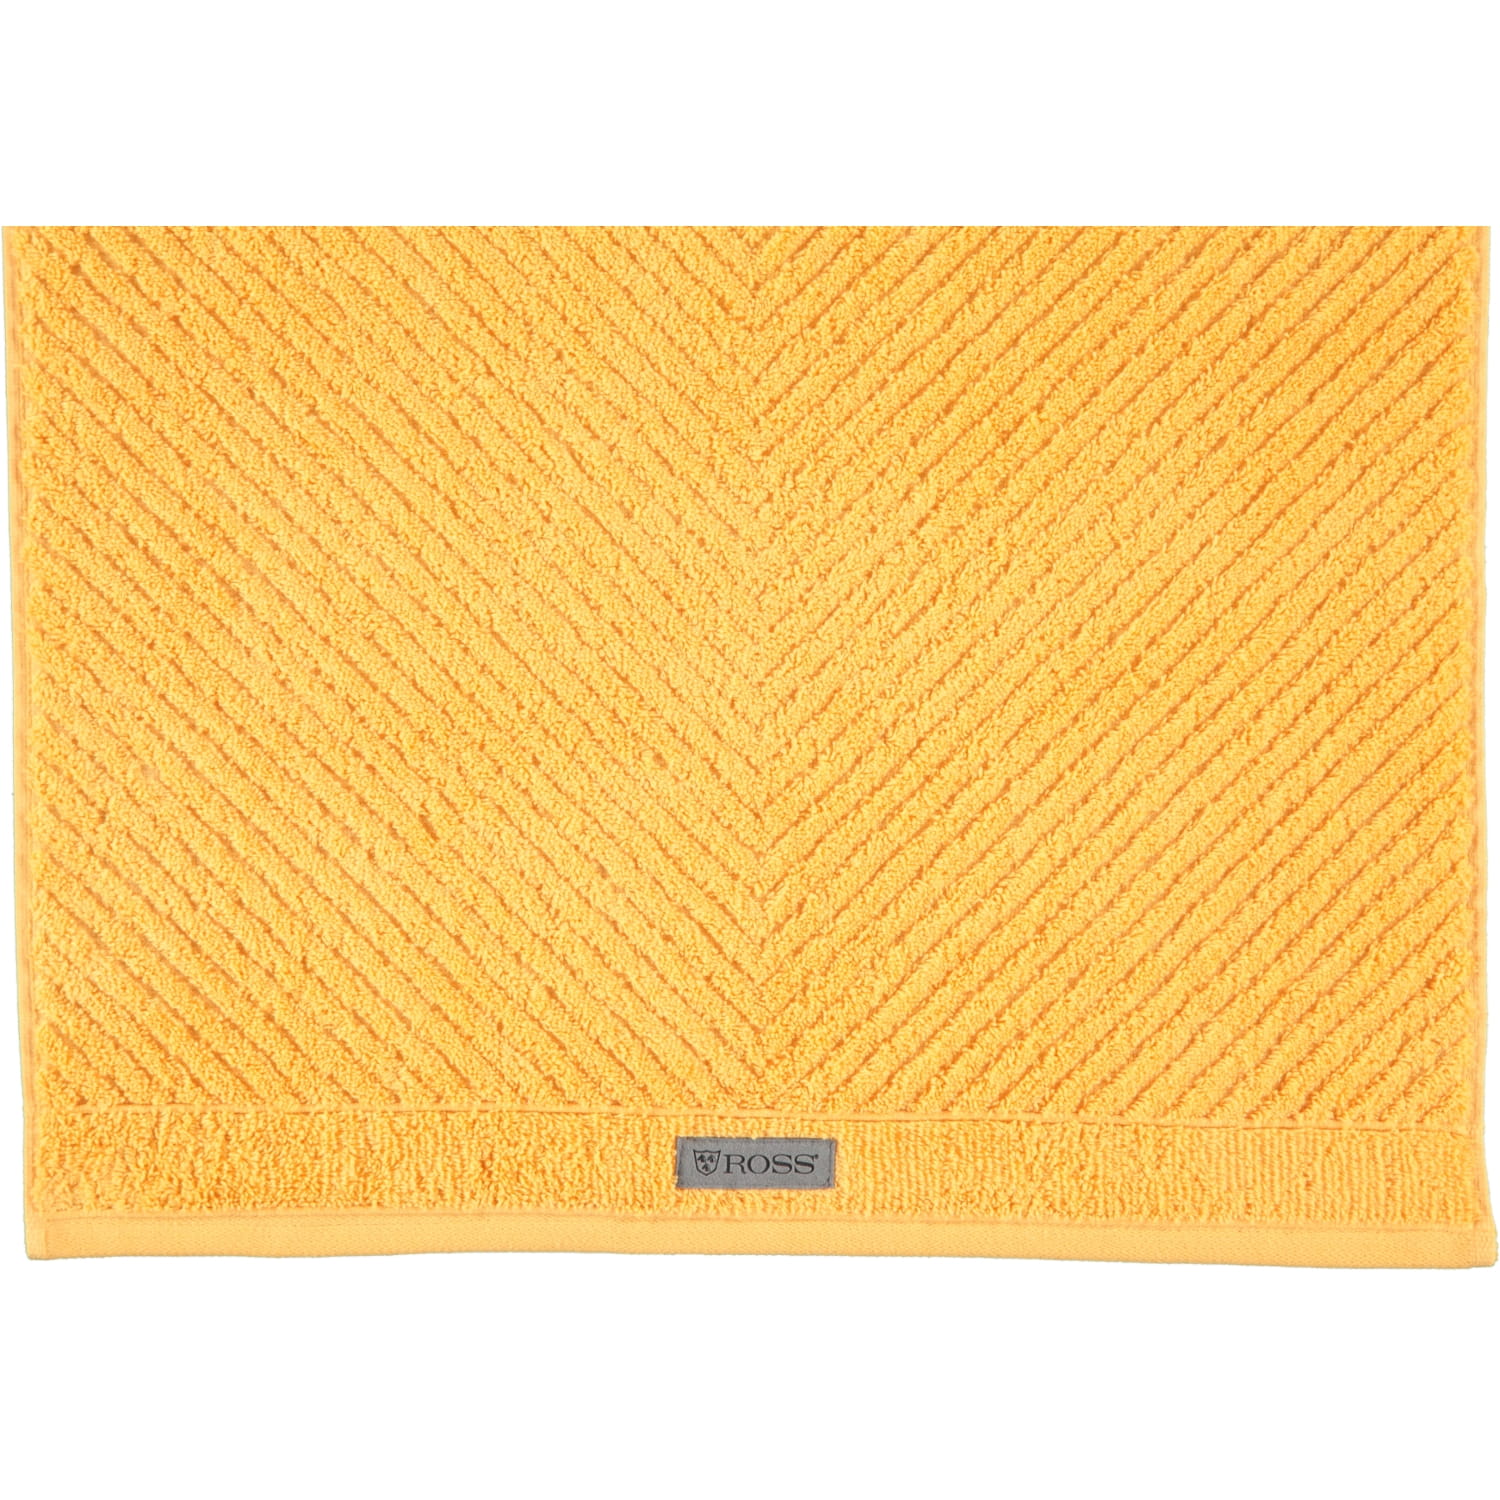 Ross | | Ross - | Marken - Handtücher Smart 45 4006 Ross aprikose Farbe: